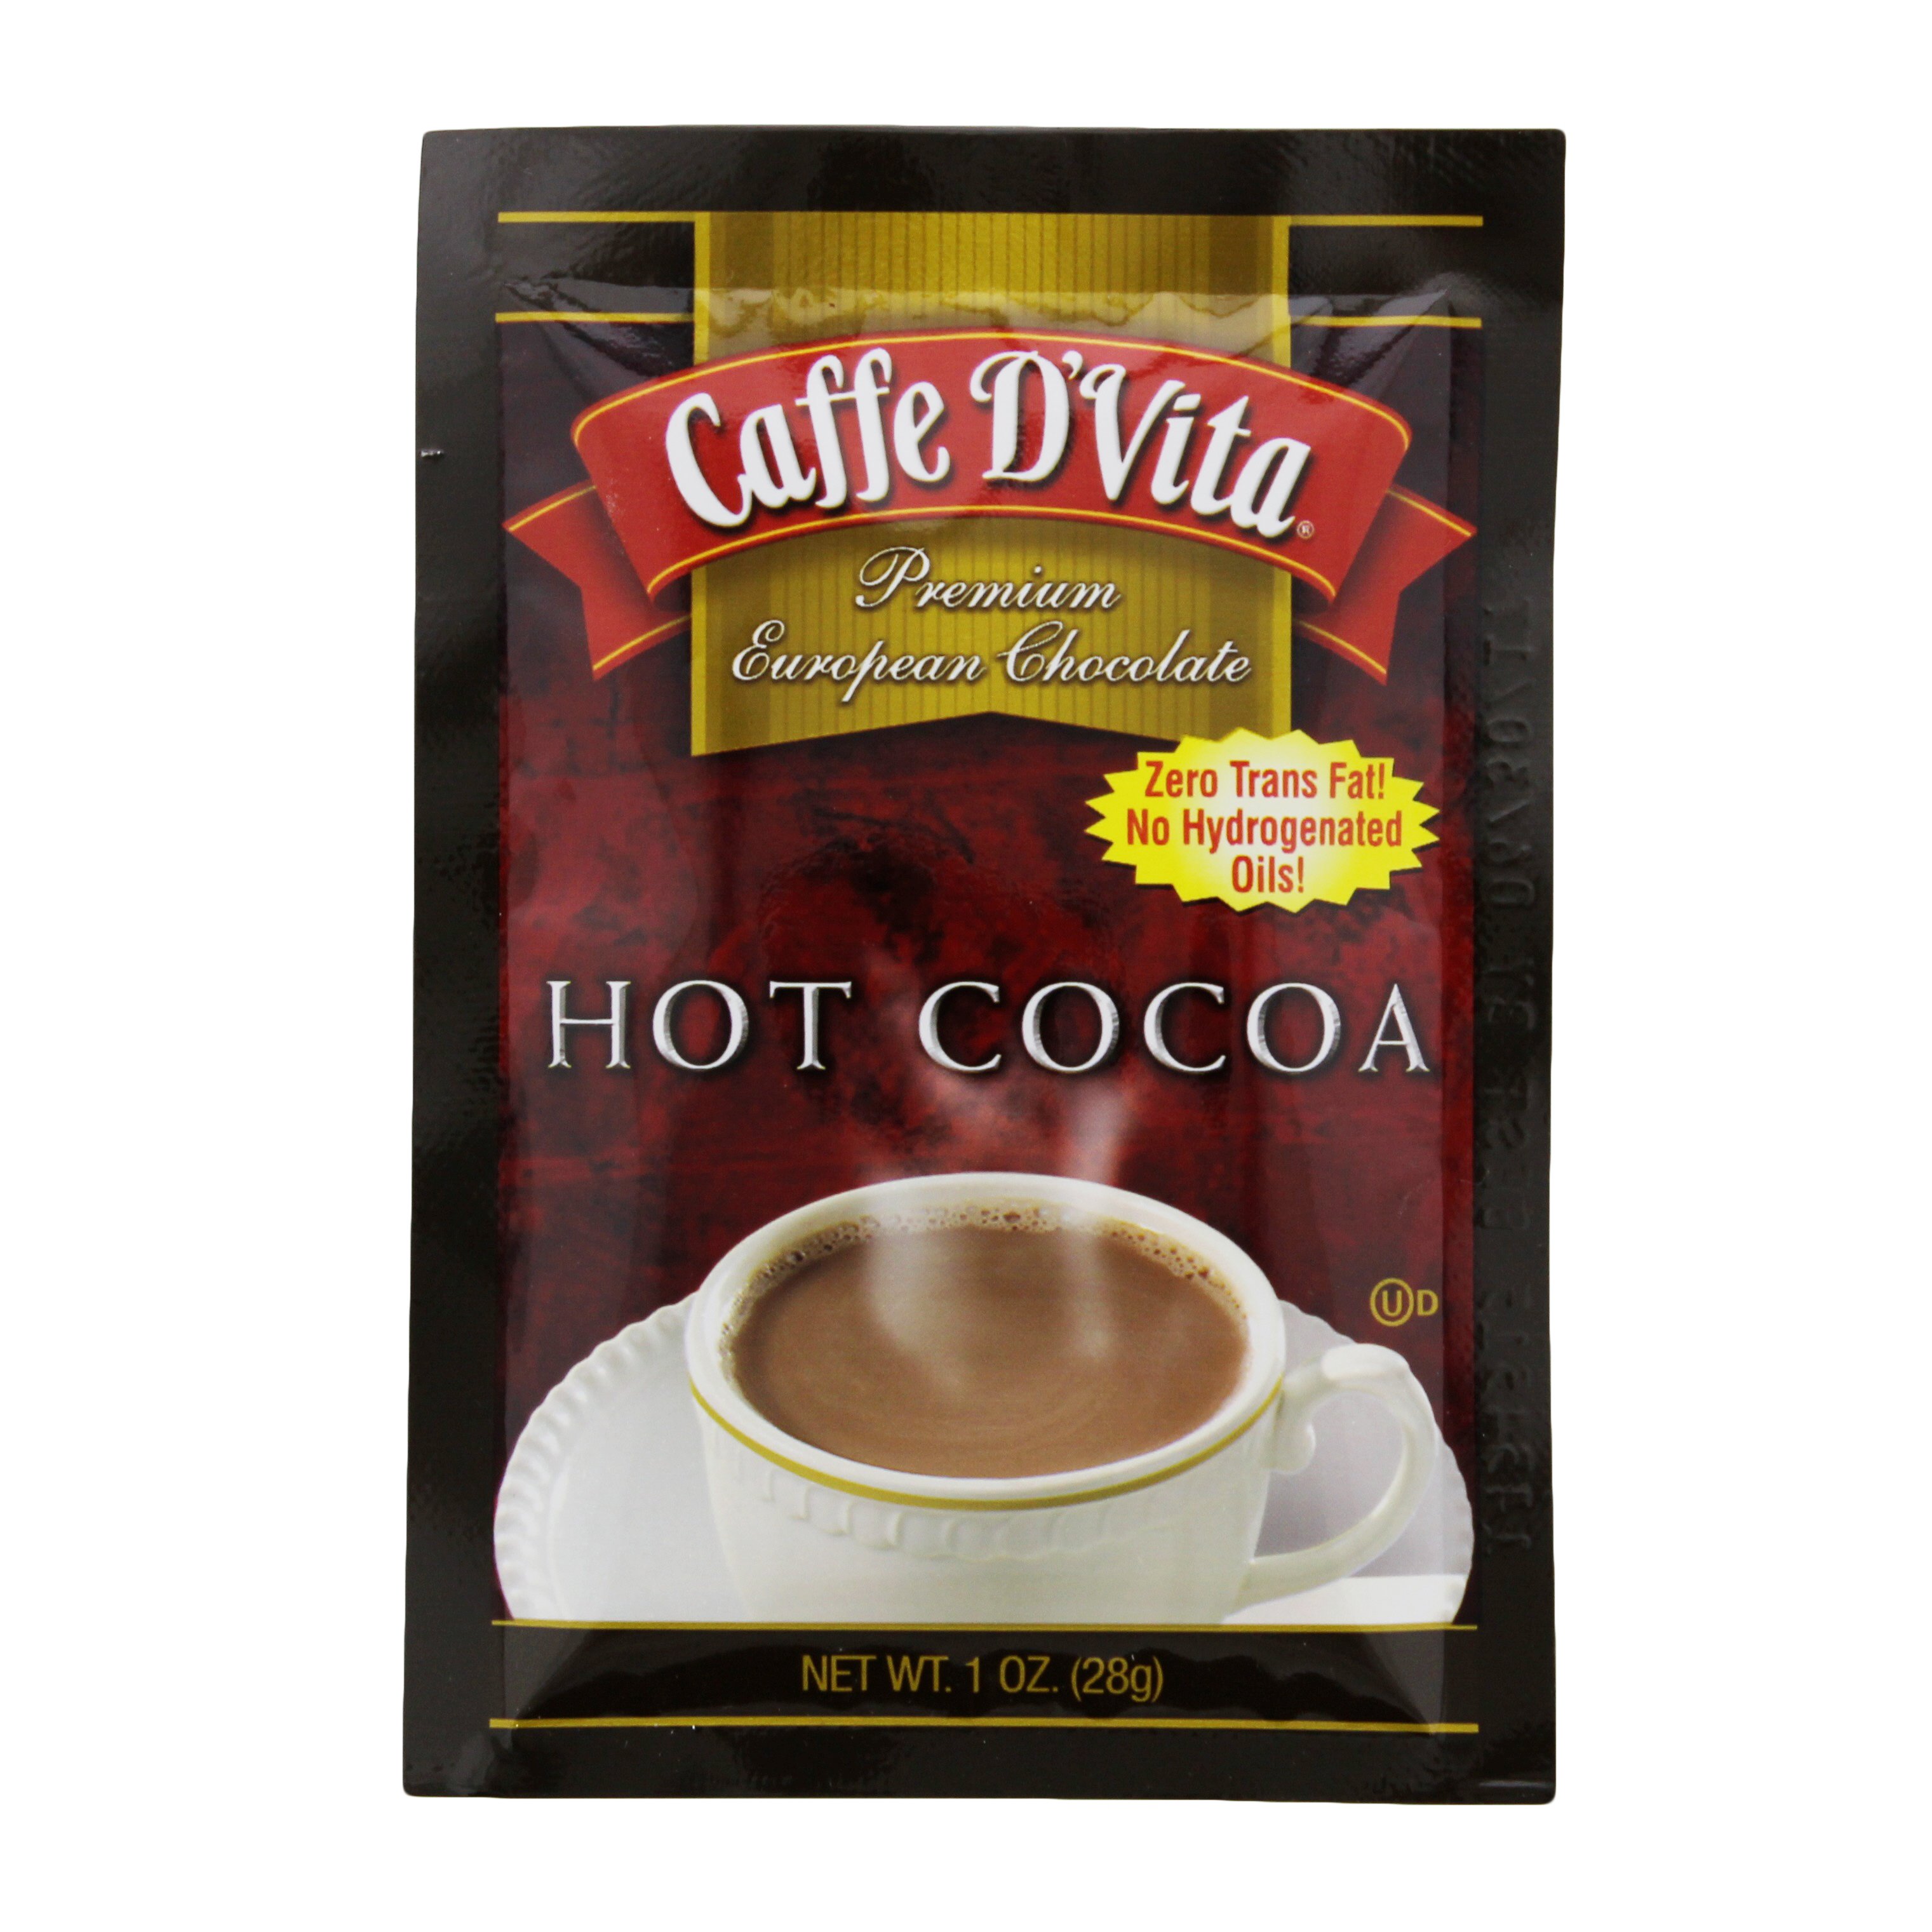 Nestle Rich Milk Chocolate Hot Cocoa Mix - Shop Cocoa at H-E-B